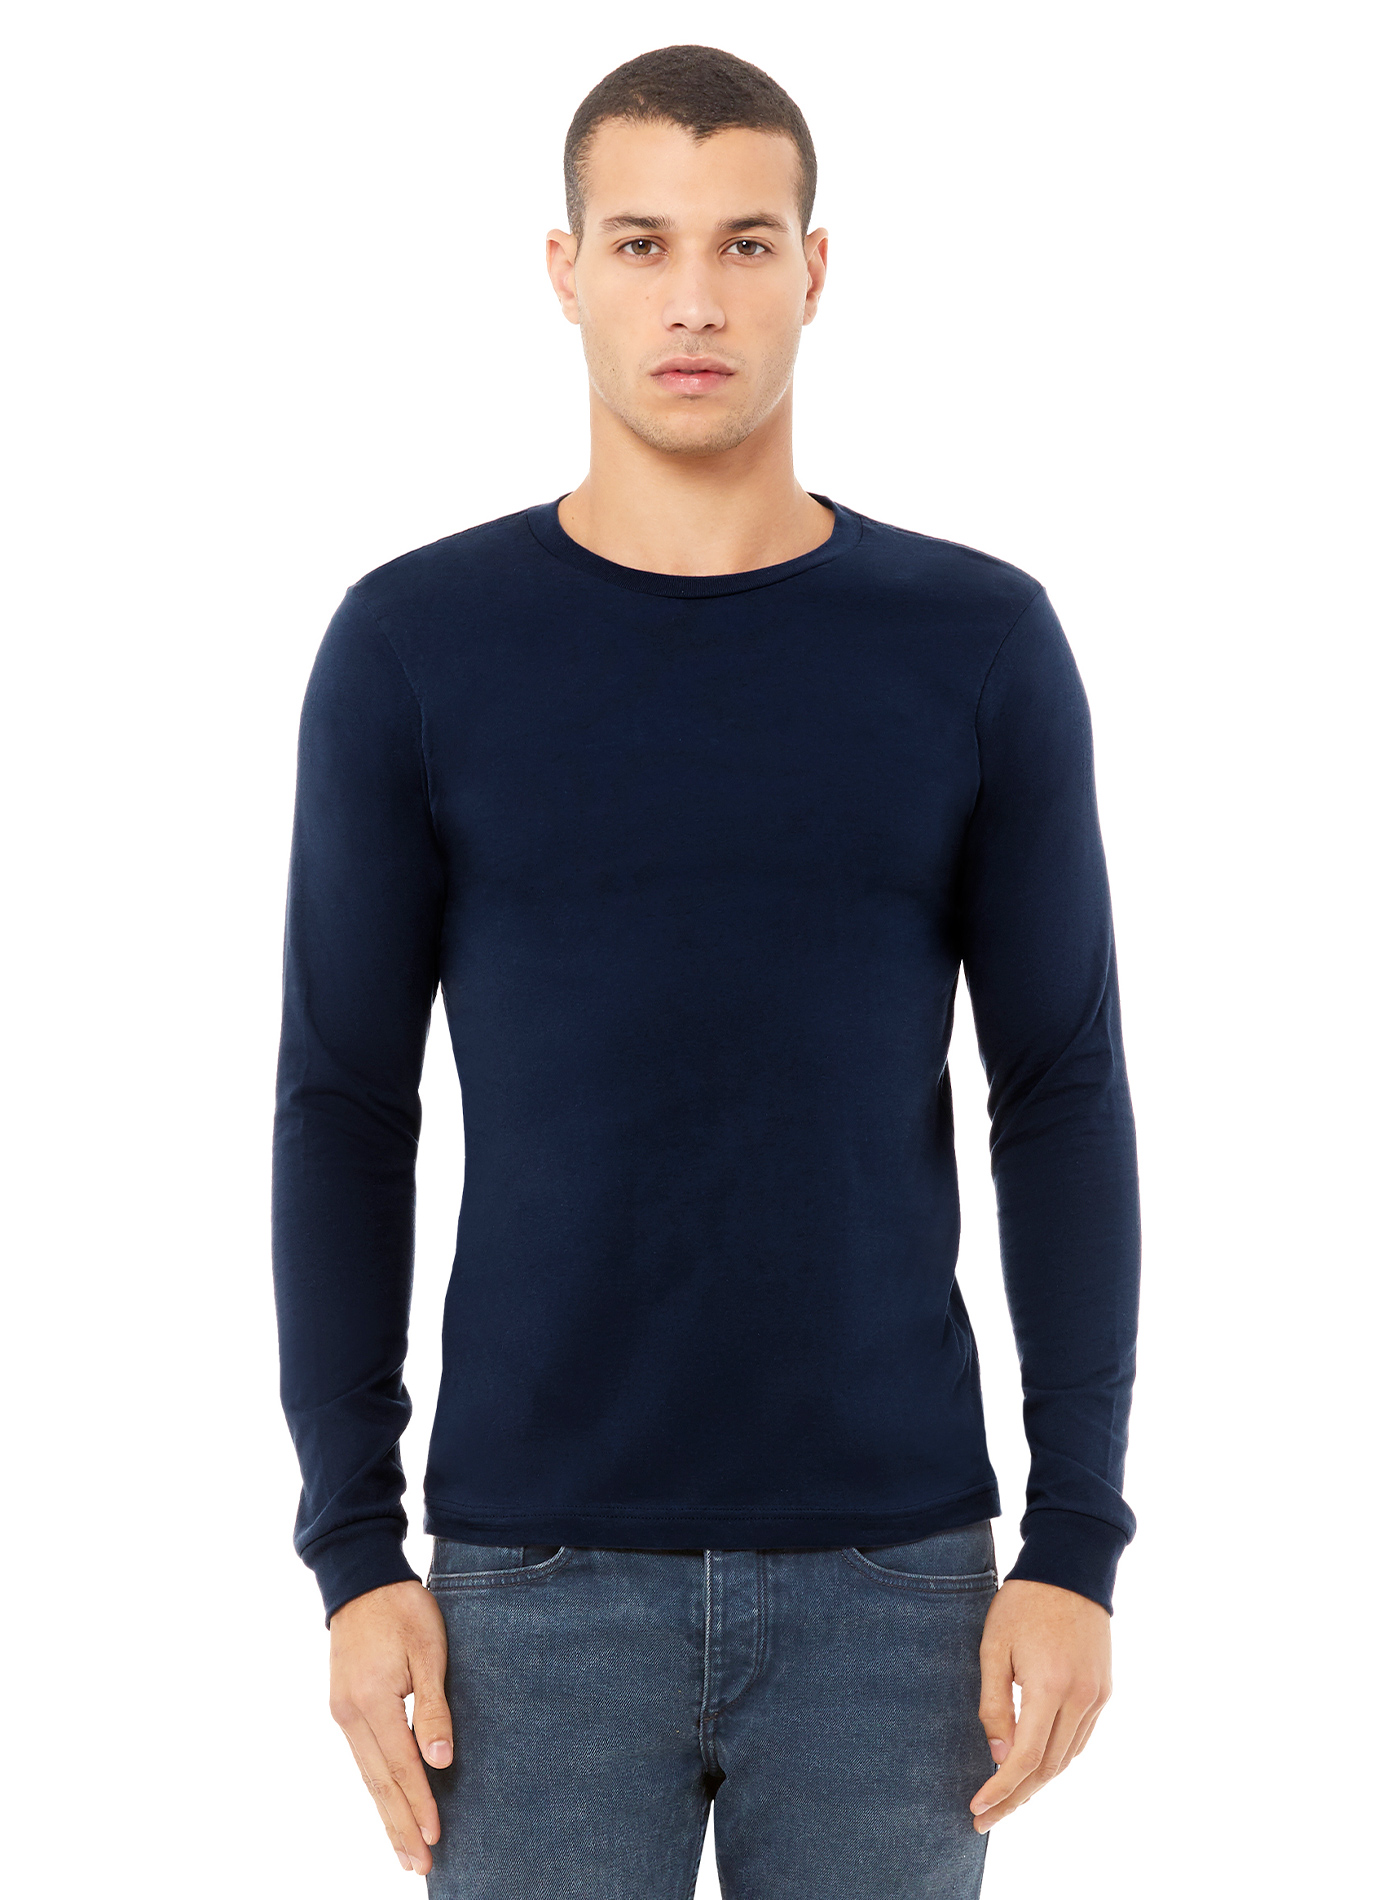 Pánské tričko Bella + Canvas Jersey - Námořnická modrá XL